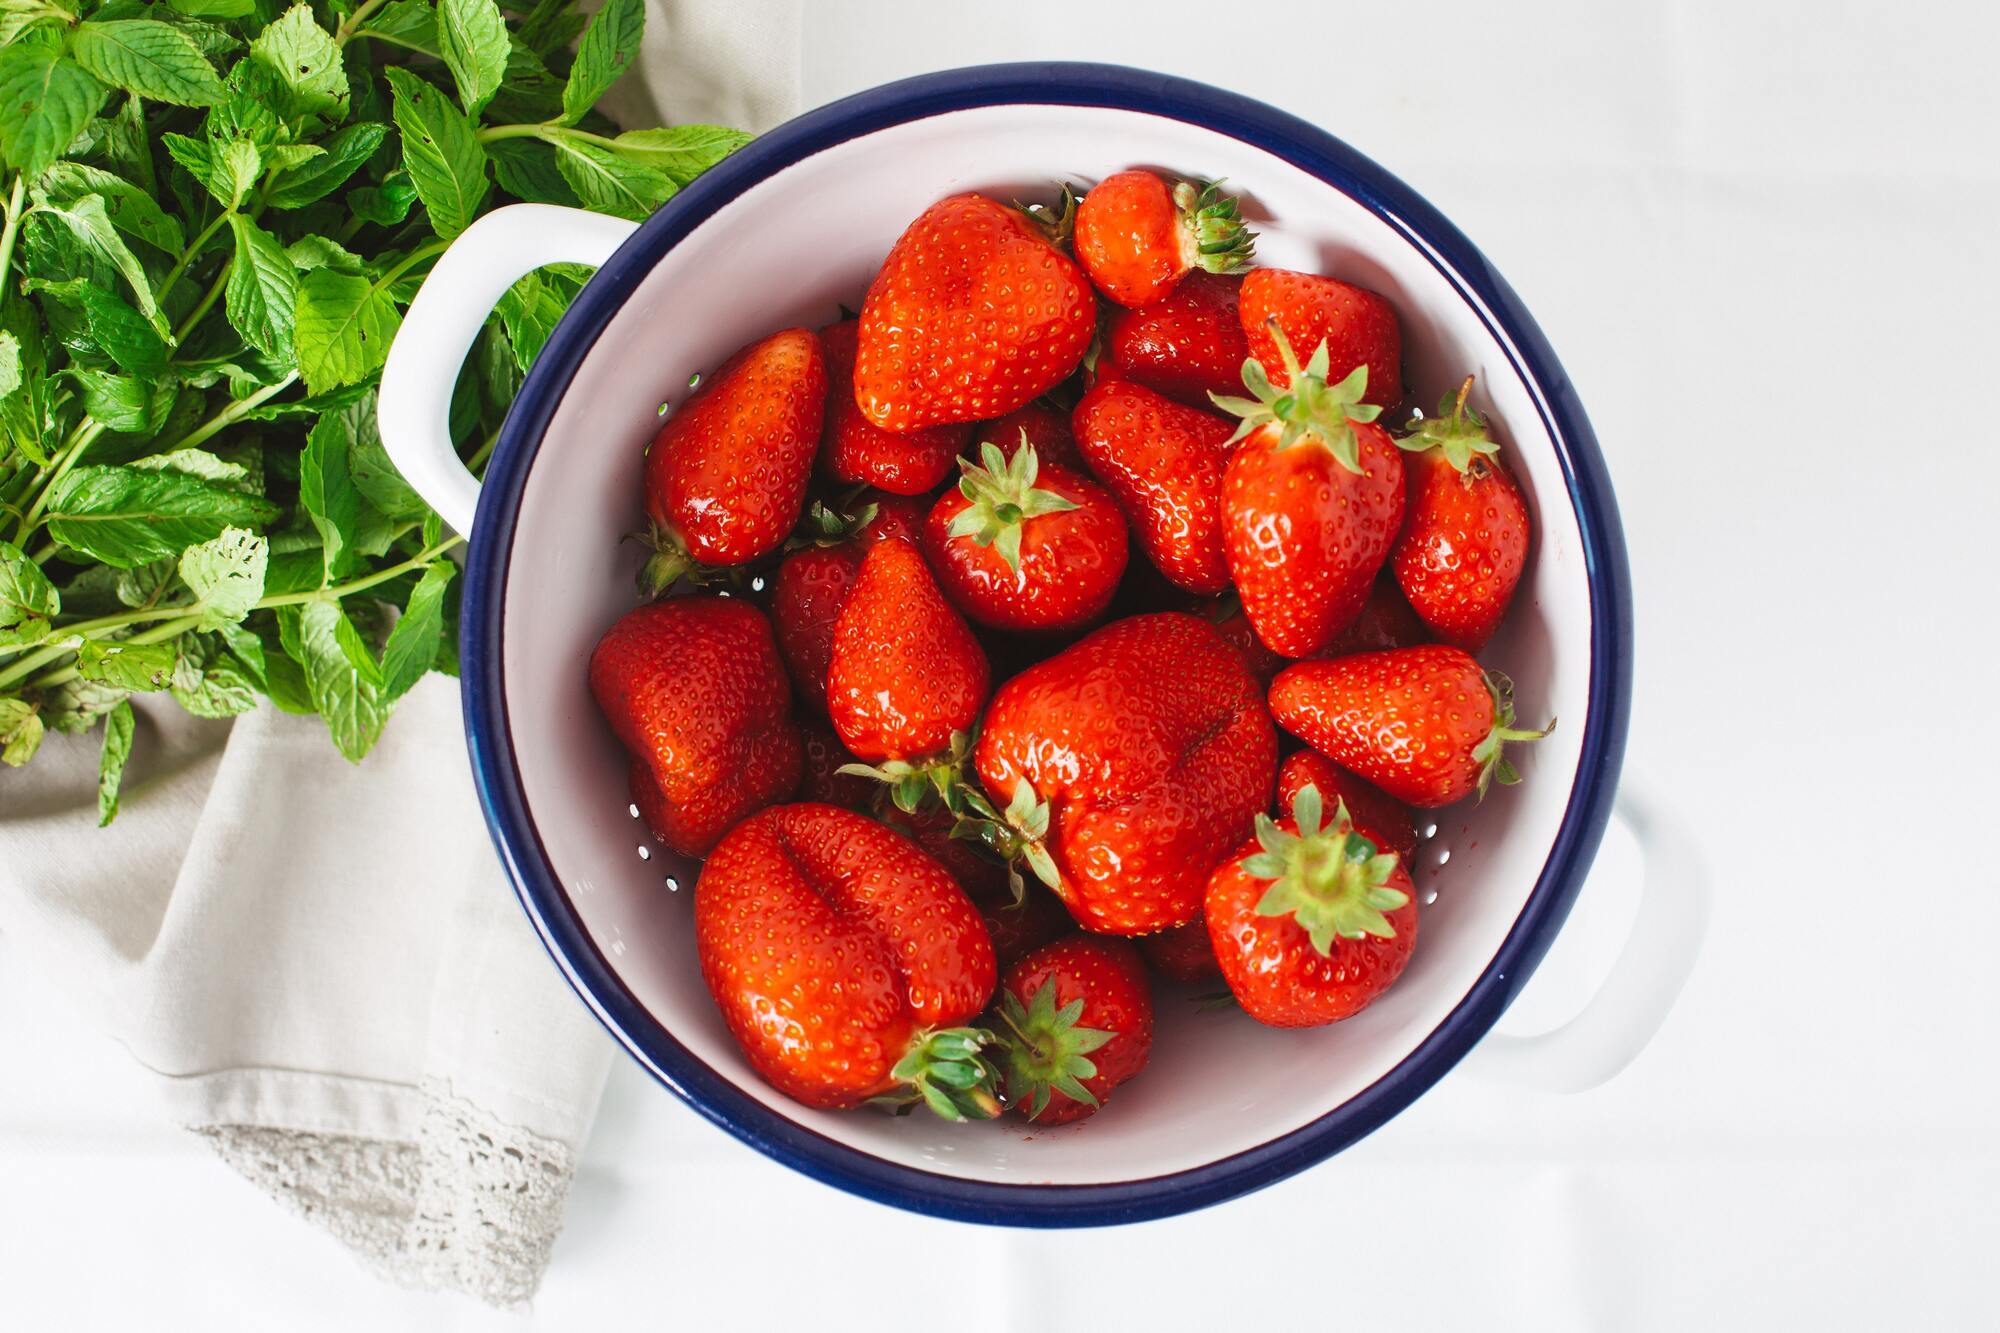 Ripe strawberries